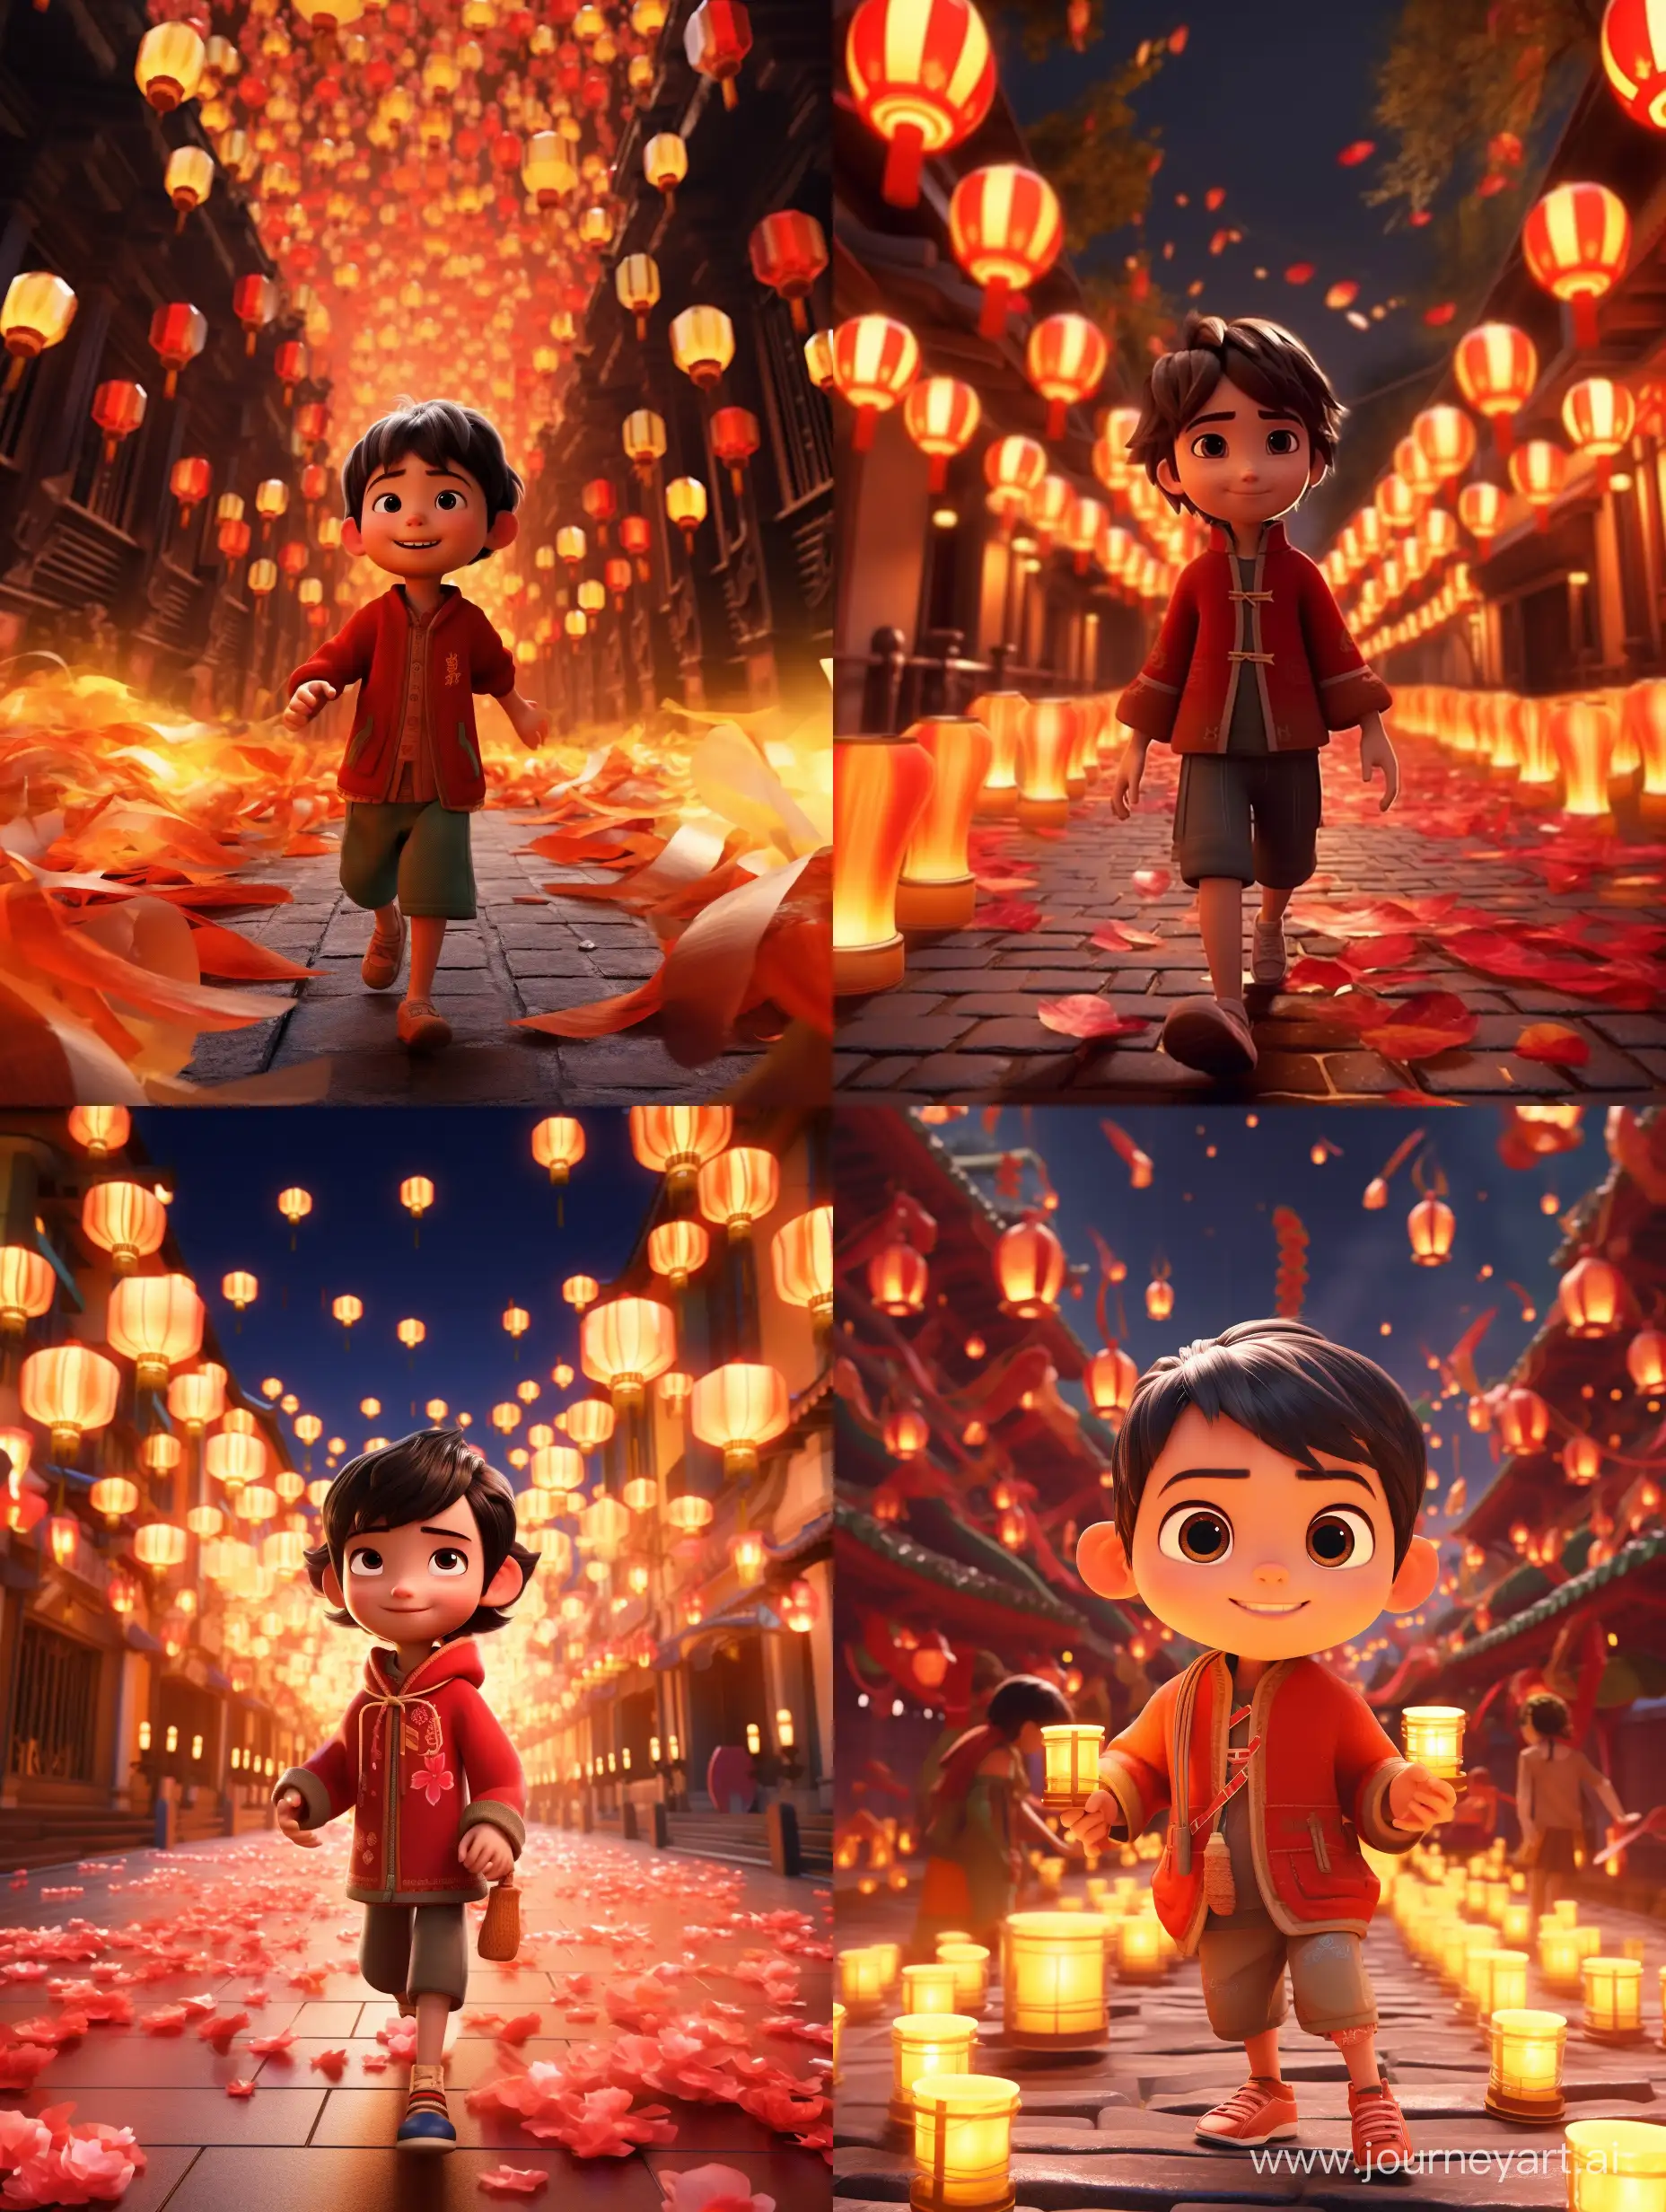 中国新年的氛围，一个小朋友穿着喜庆的衣服逛灯会，高清画质，皮克斯动画风格